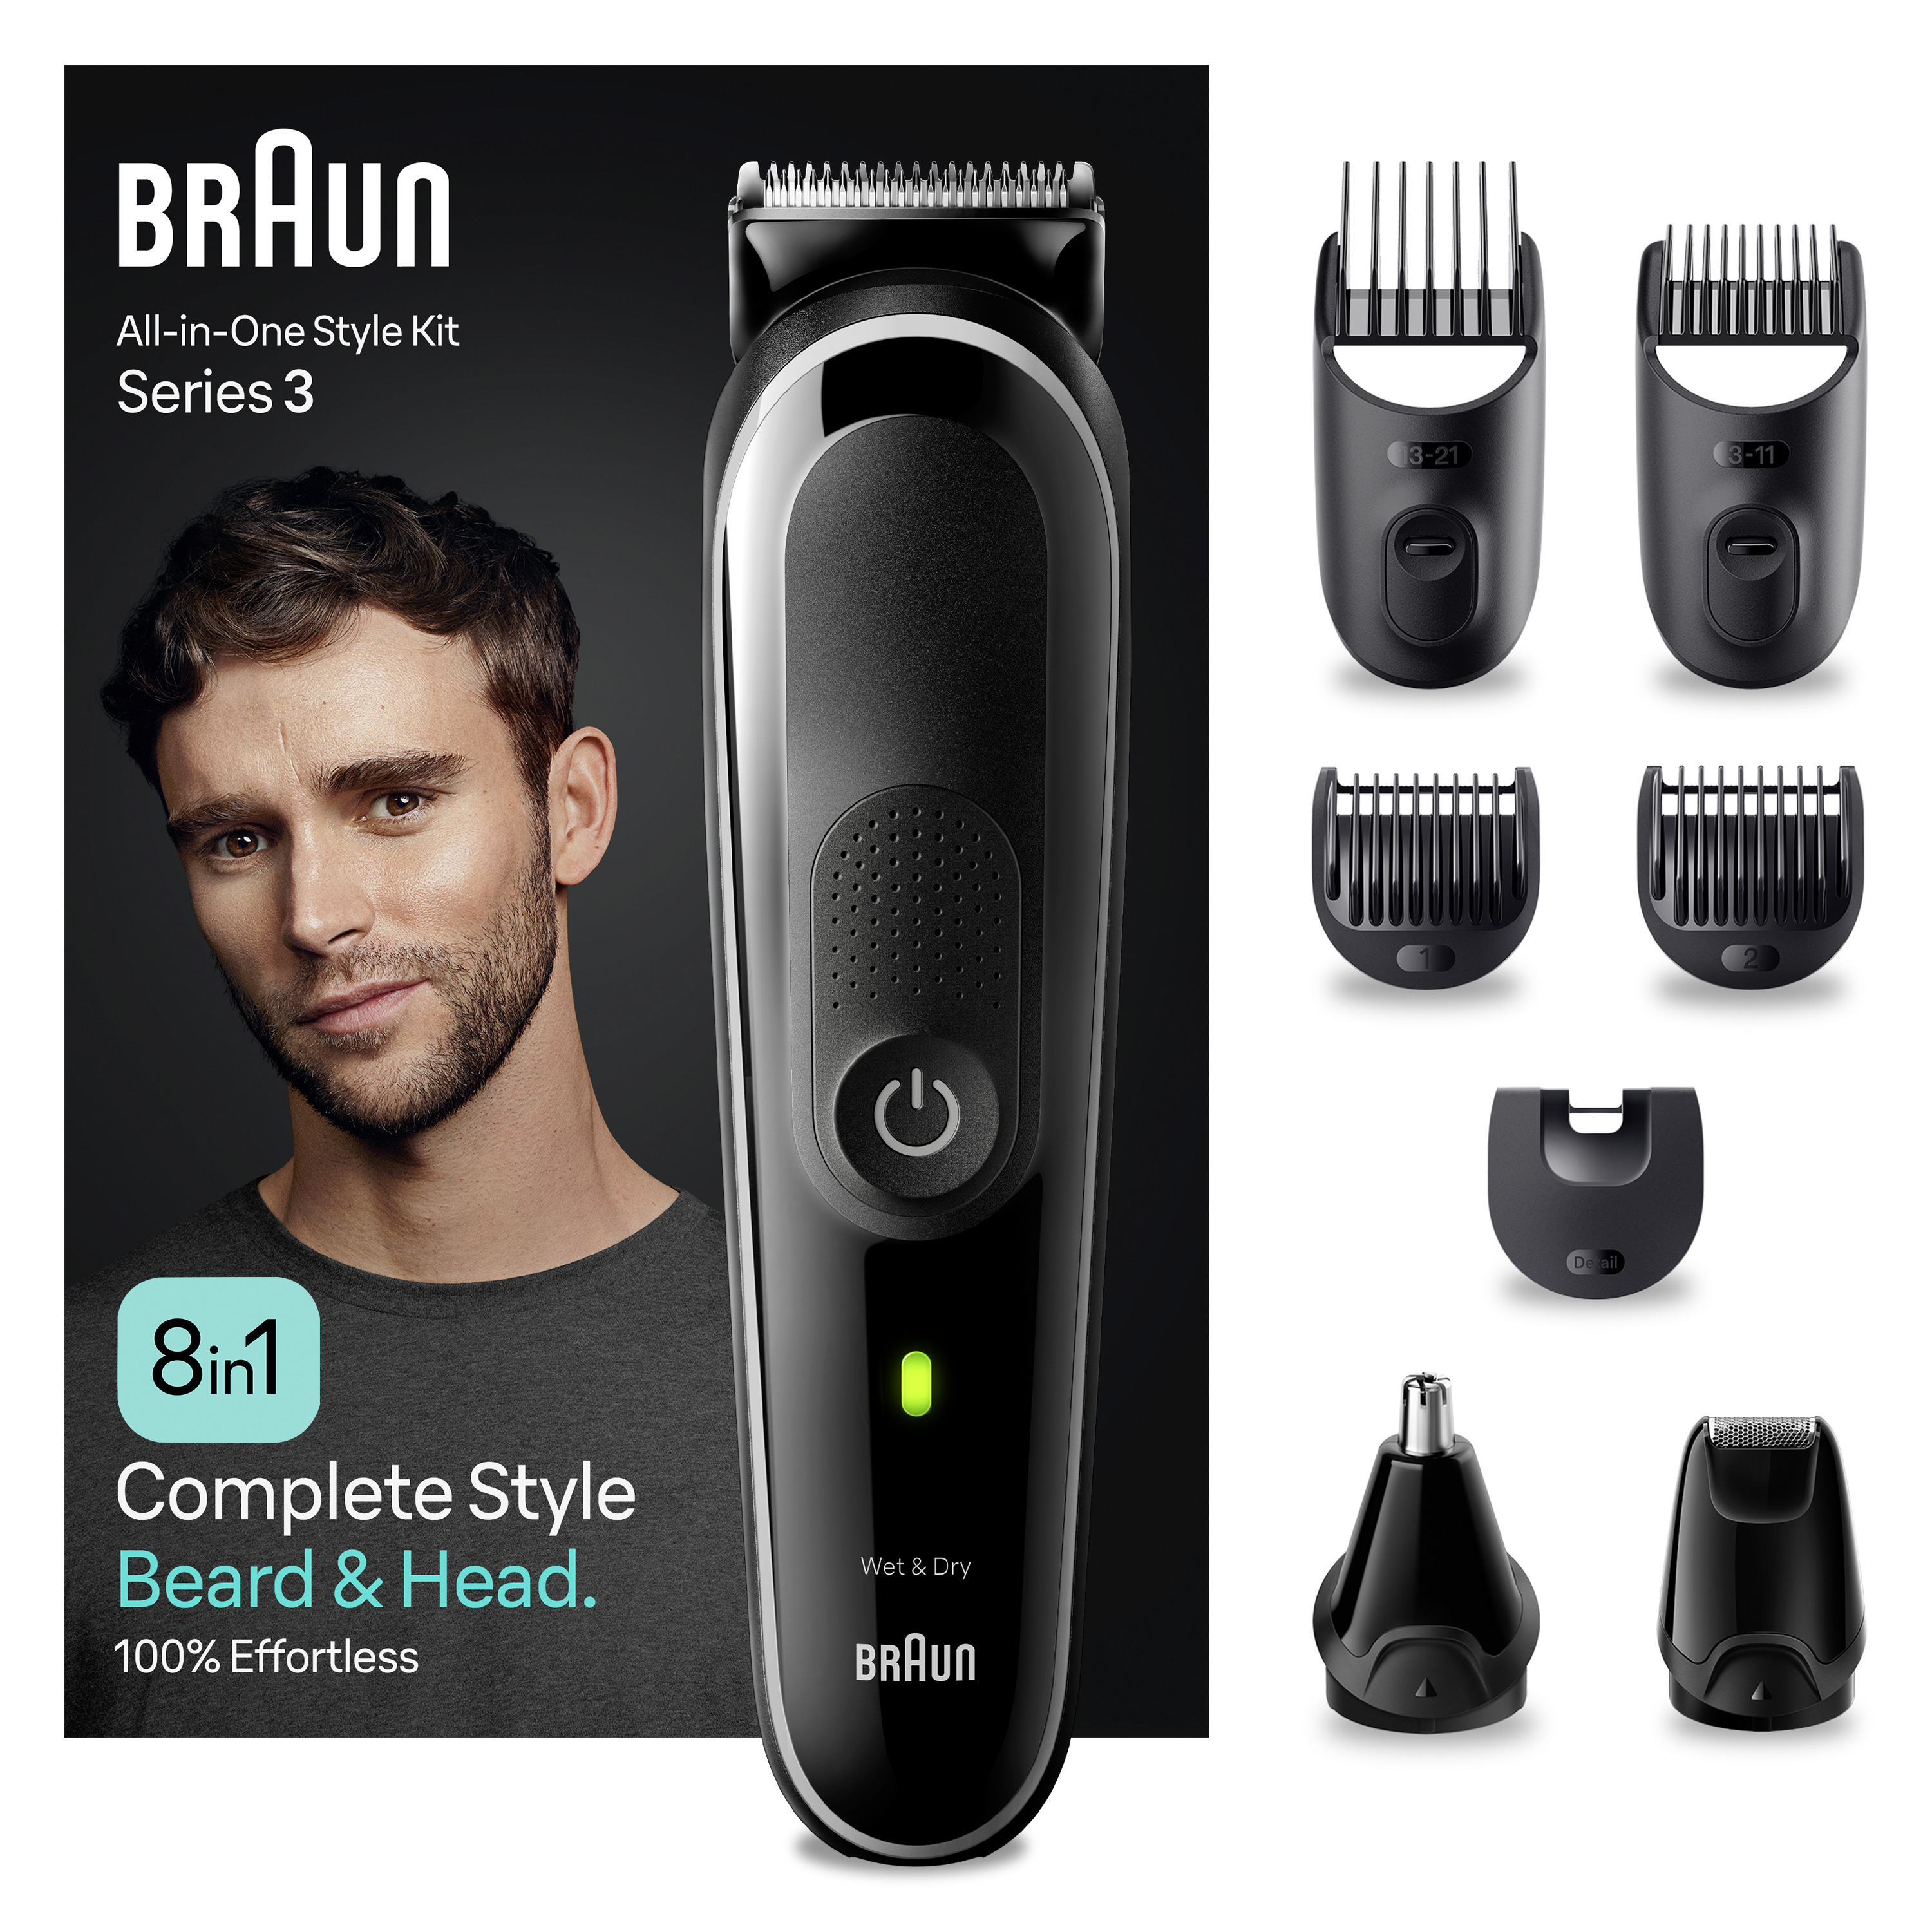 Braun - Braun Series 3 MGK3440 recortadora todo en uno, kit 8 En 1 de afeitado diario para hombres, recorte de barba, cortar el pelo, recortadora para nariz y orejas y más, con lámina ultraafilada, resistente al agua, recargable, 80 min de autonomía inalámbrica